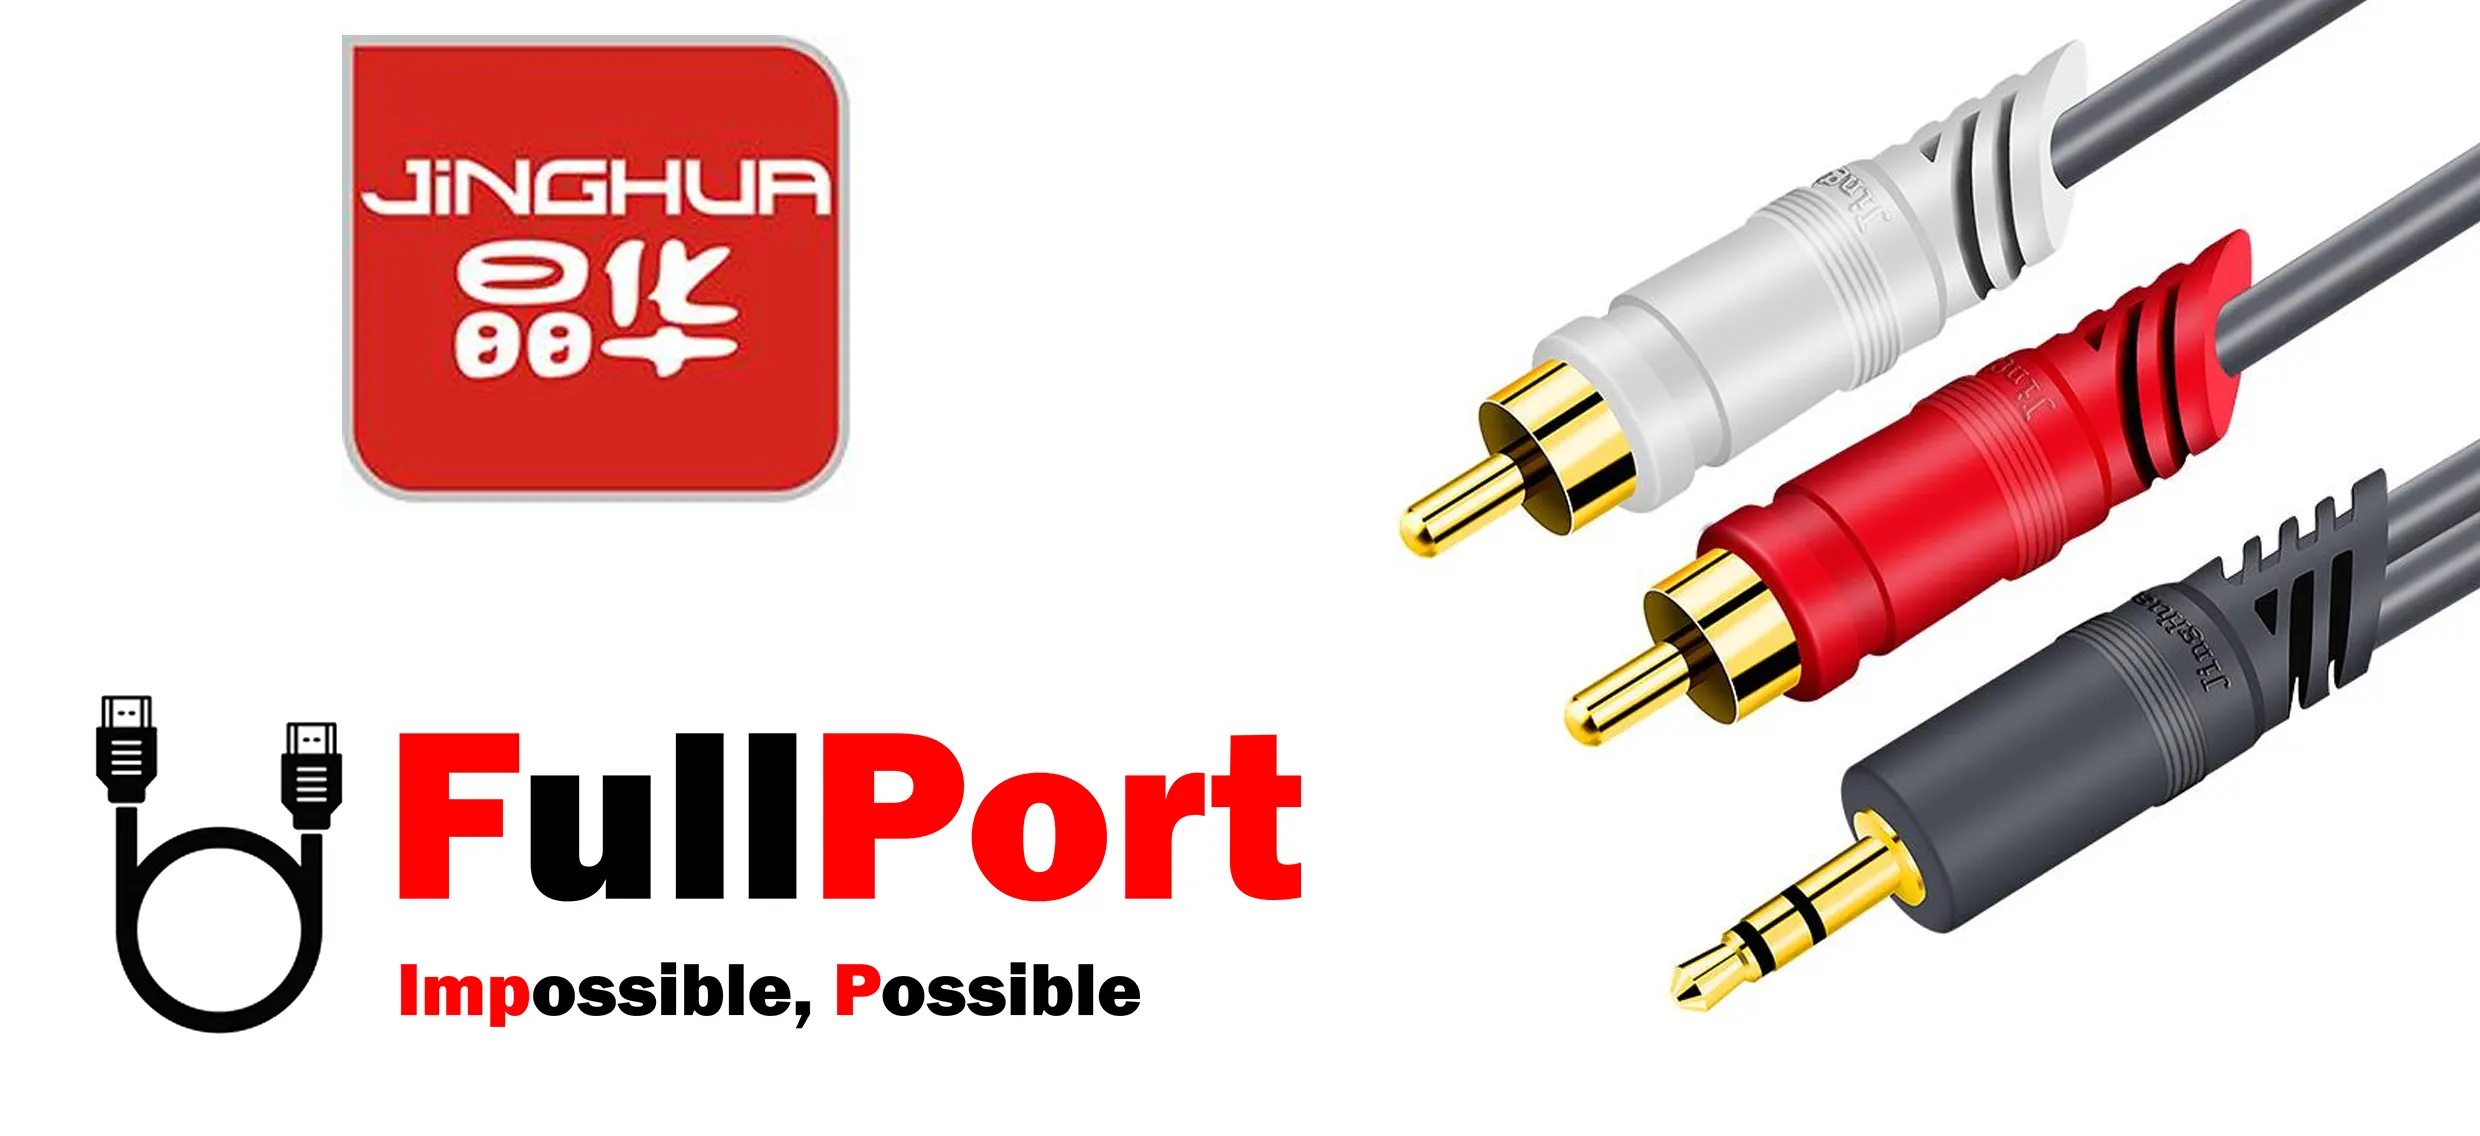 خرید کابل صدا 1 به 2 جی اچ | JH Cable طول 1.5 متر یا معادل 150 سانتیمتر یا 150CM از فروشگاه اینترنتی فول پورت